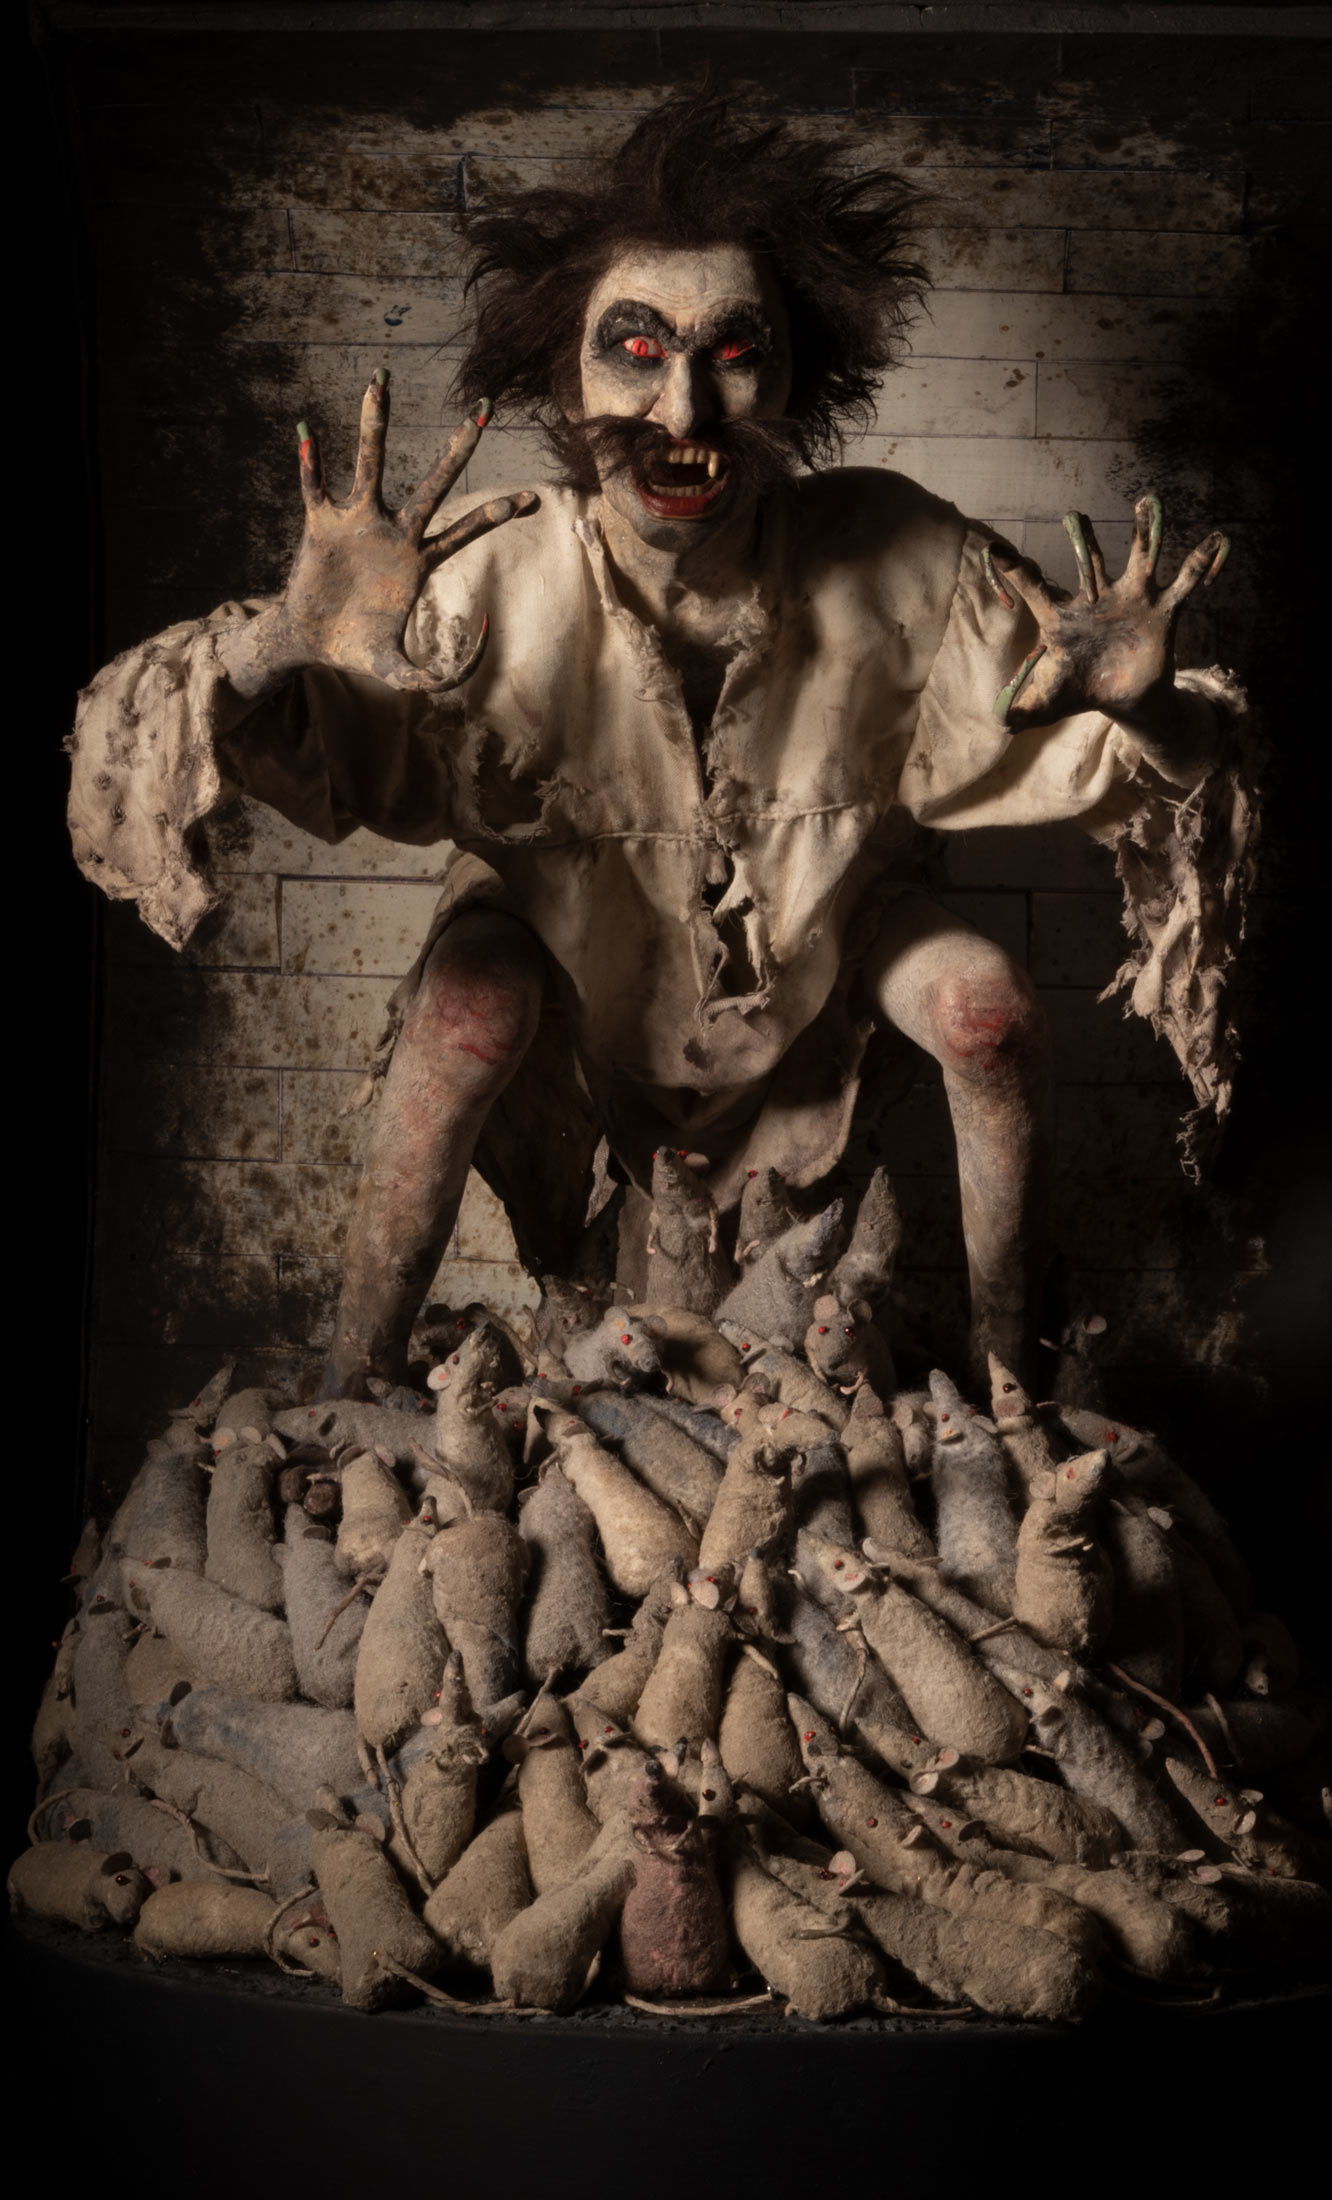 Nosferatu figure "Death of a Vampire" in the sewers of Paris